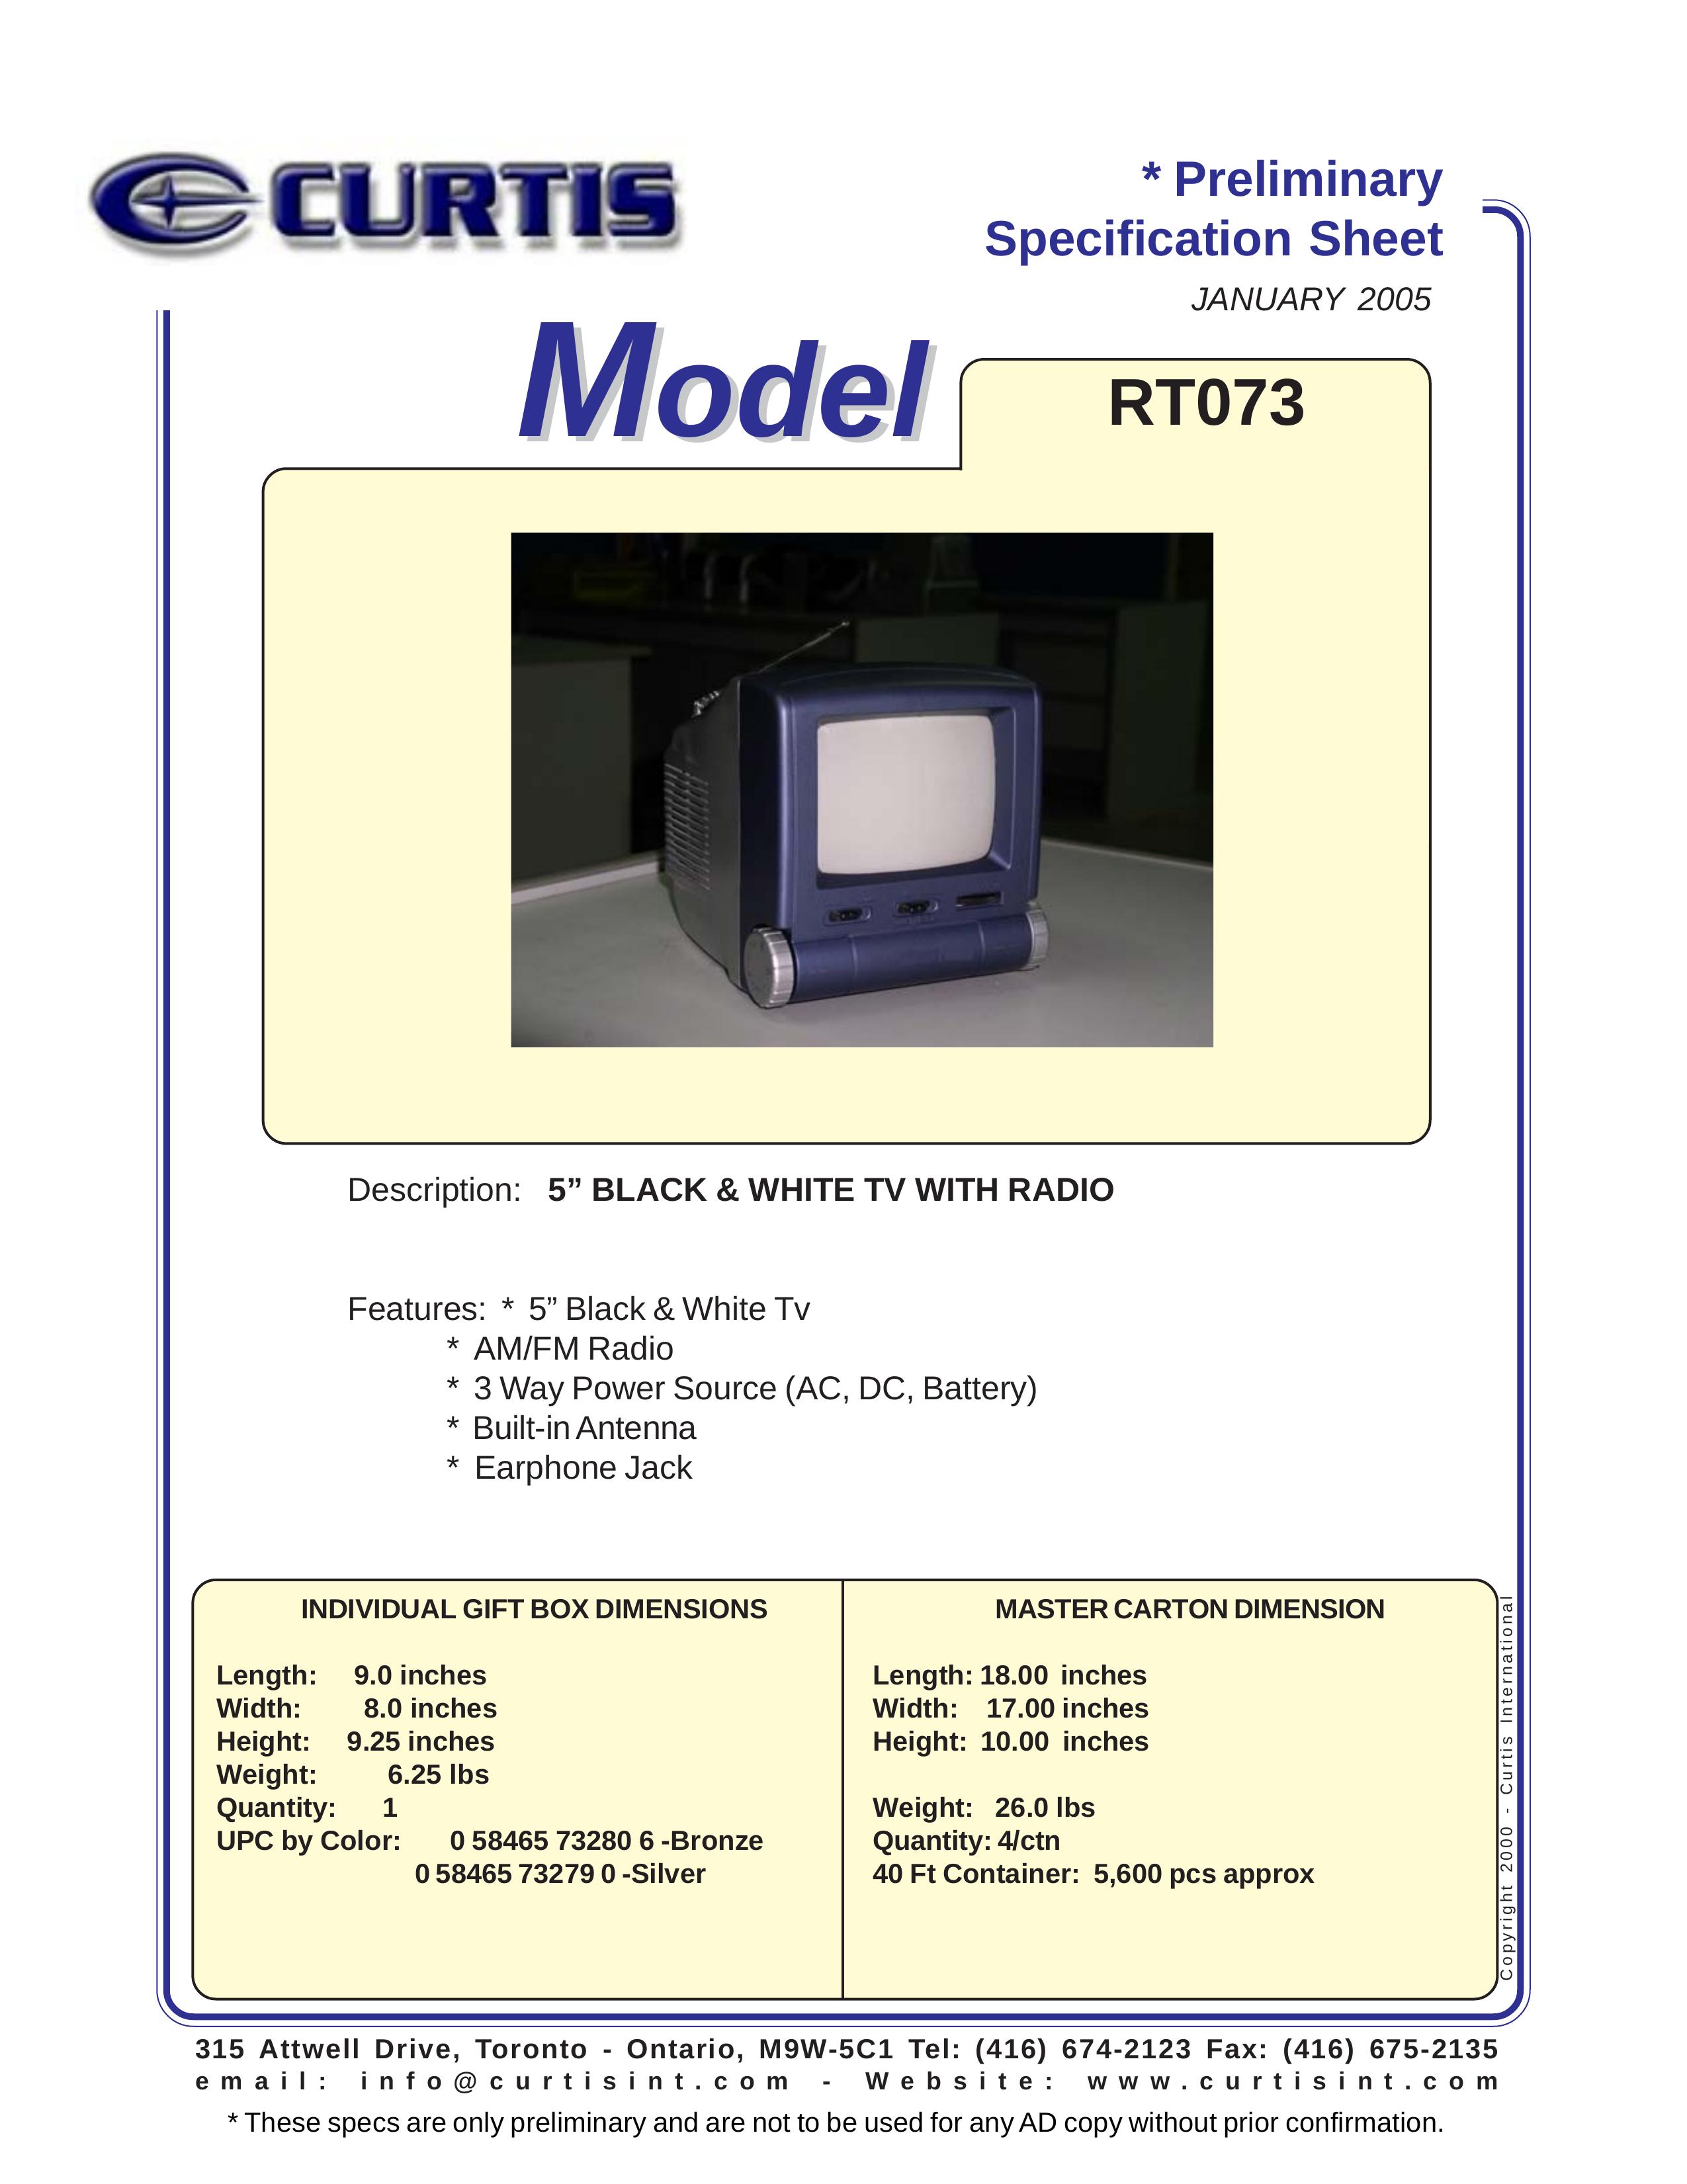 Curtis RT073 Handheld TV User Manual